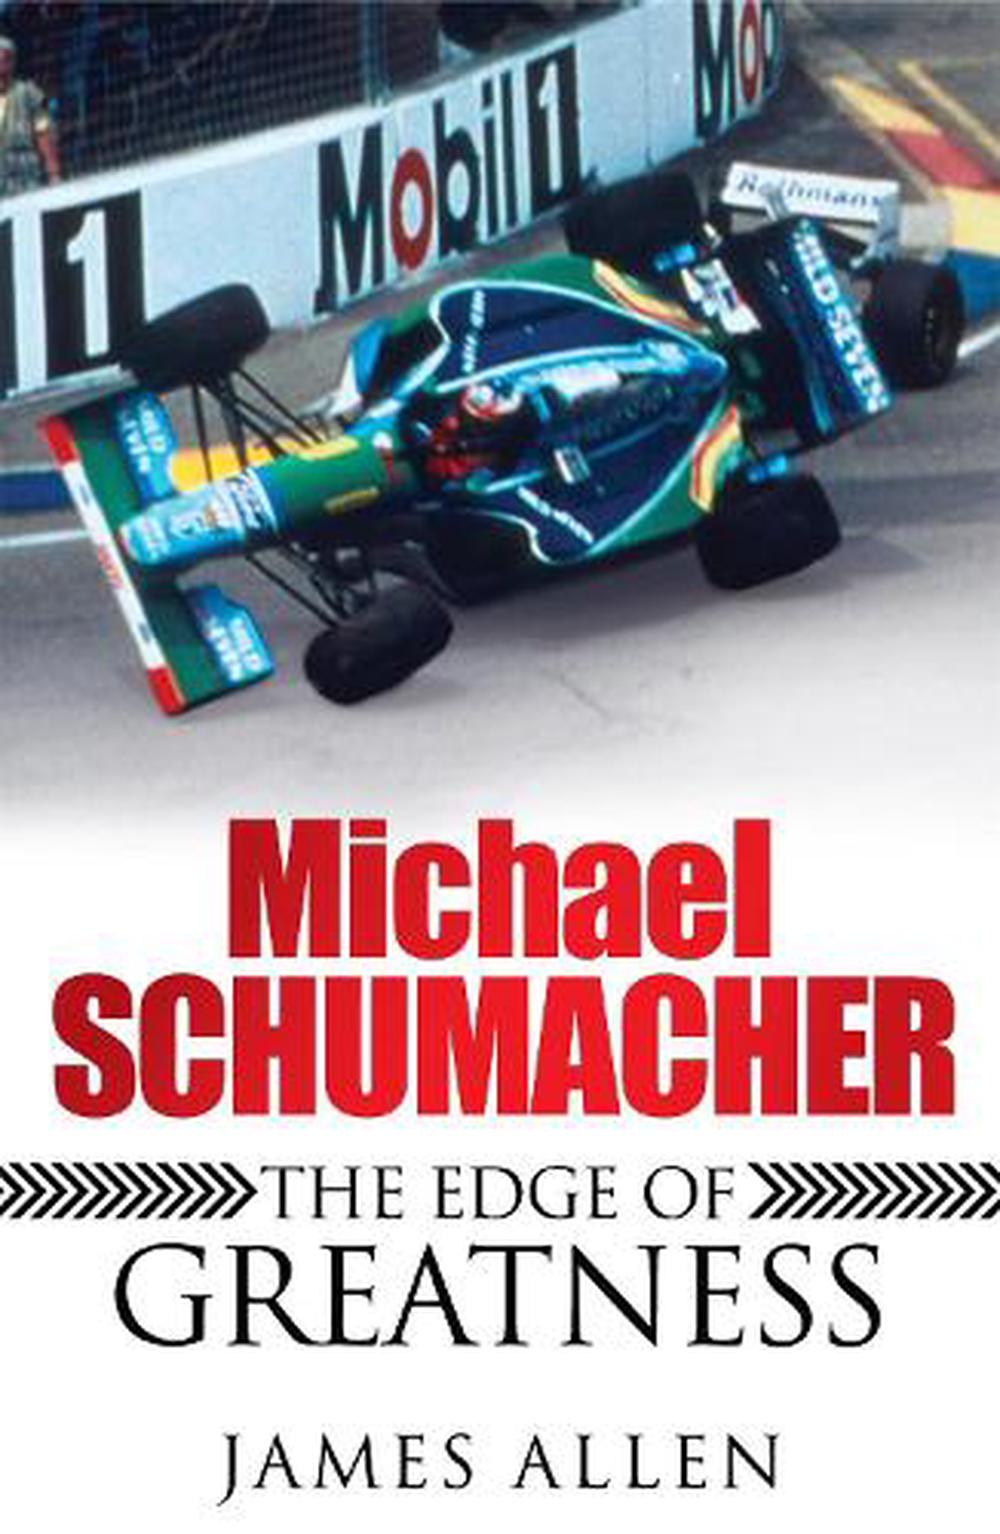 Michael Schumacher The Edge of Greatness by James Allen, Paperback, 9780755316502 Buy online